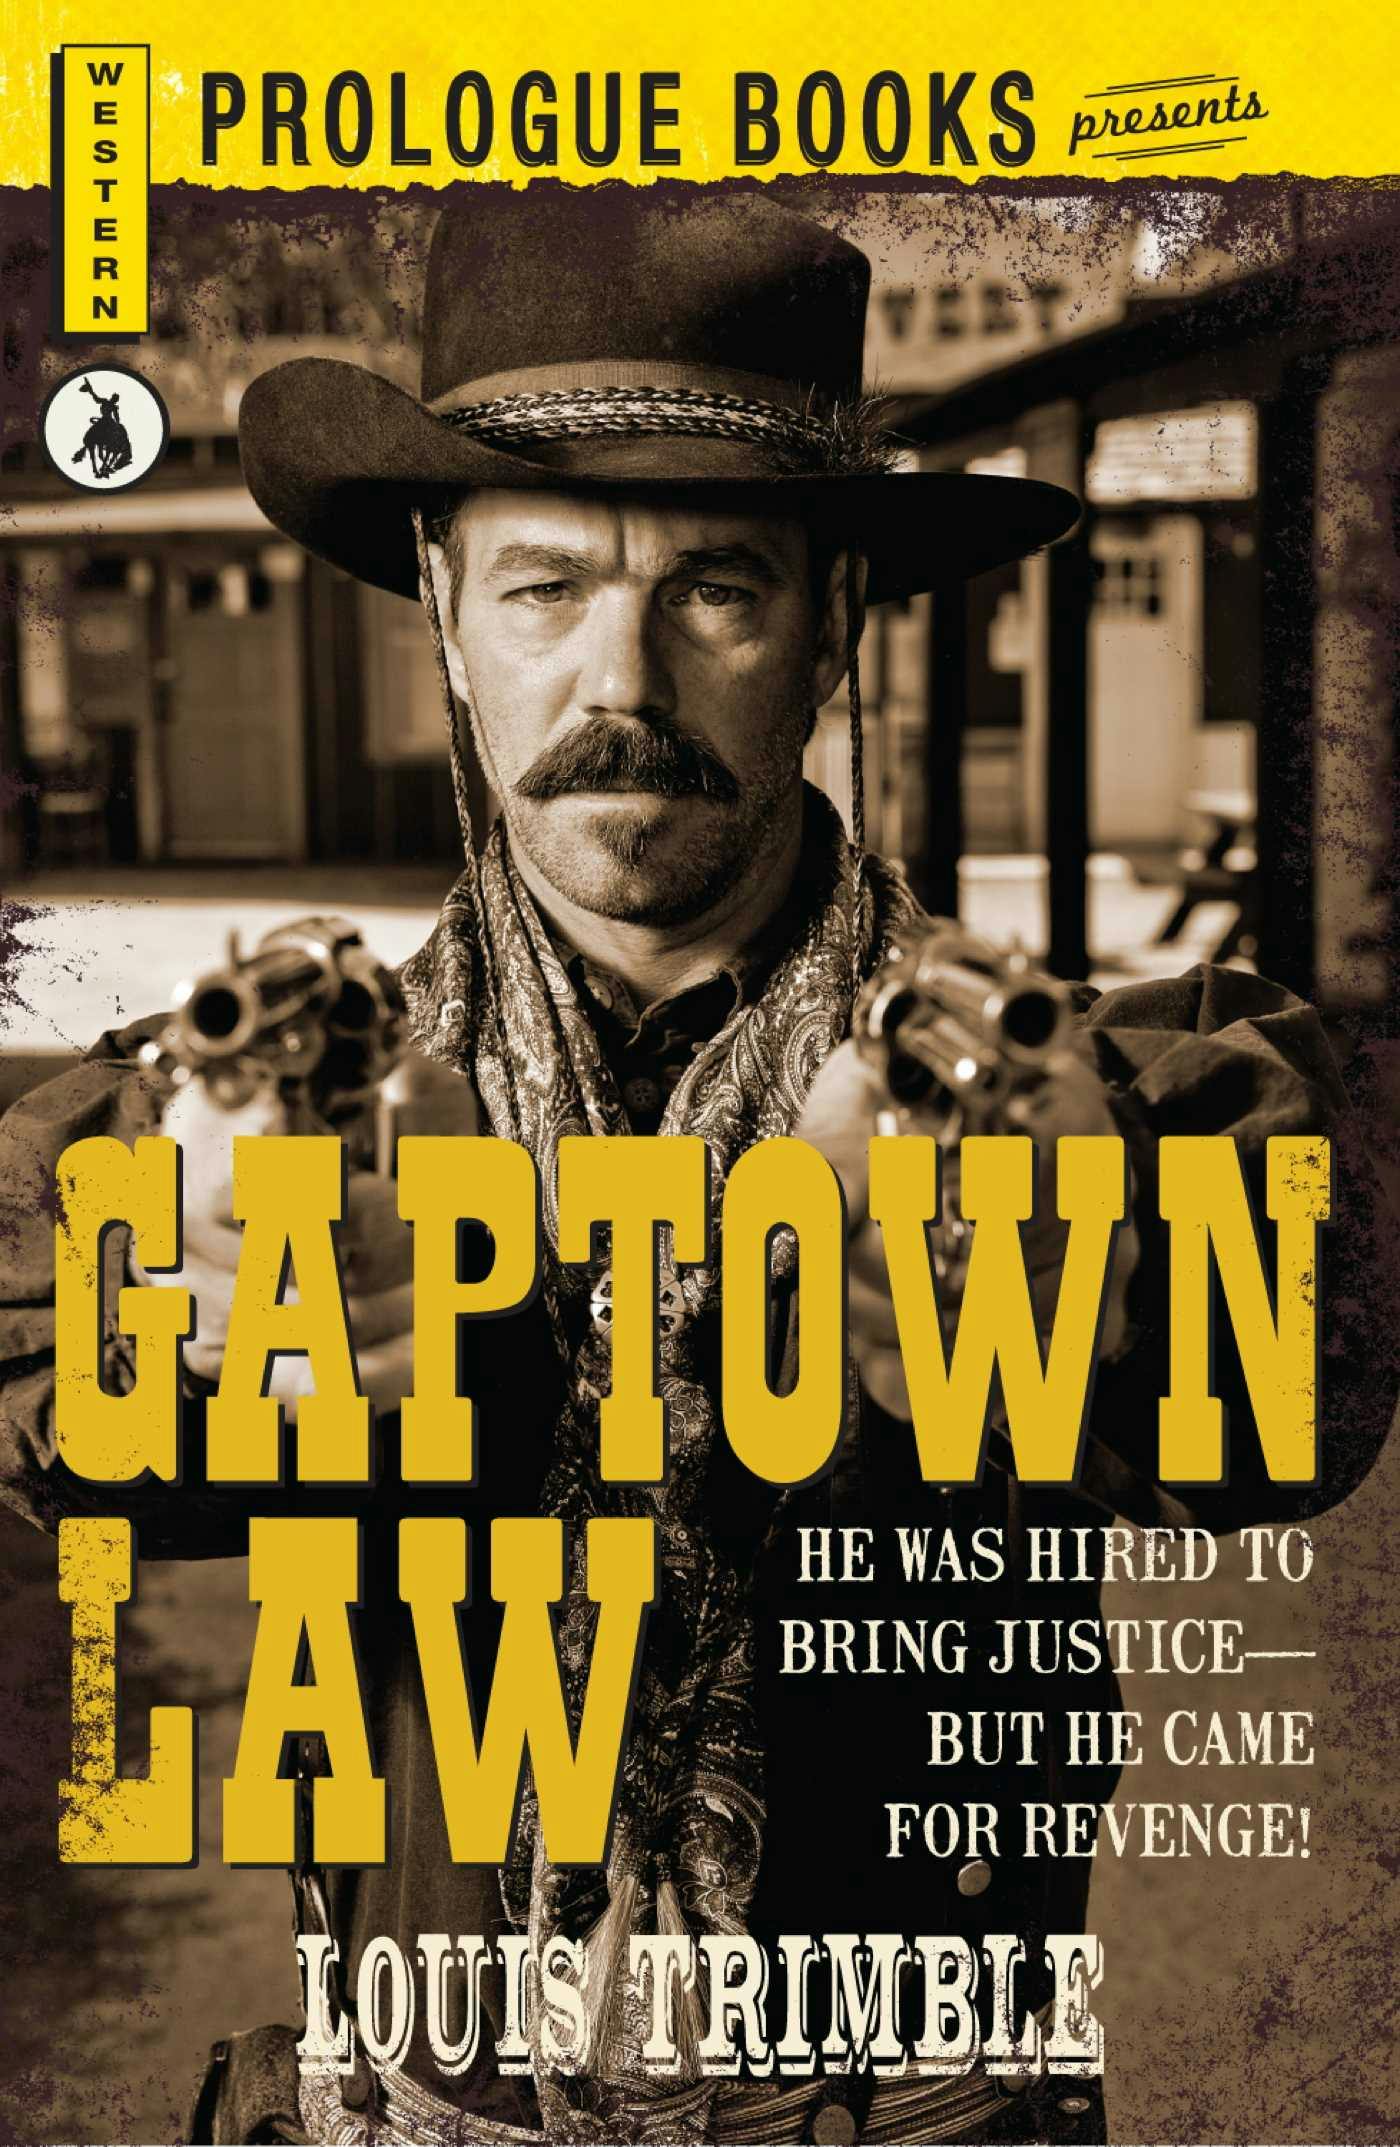 Gaptown Law - undefined